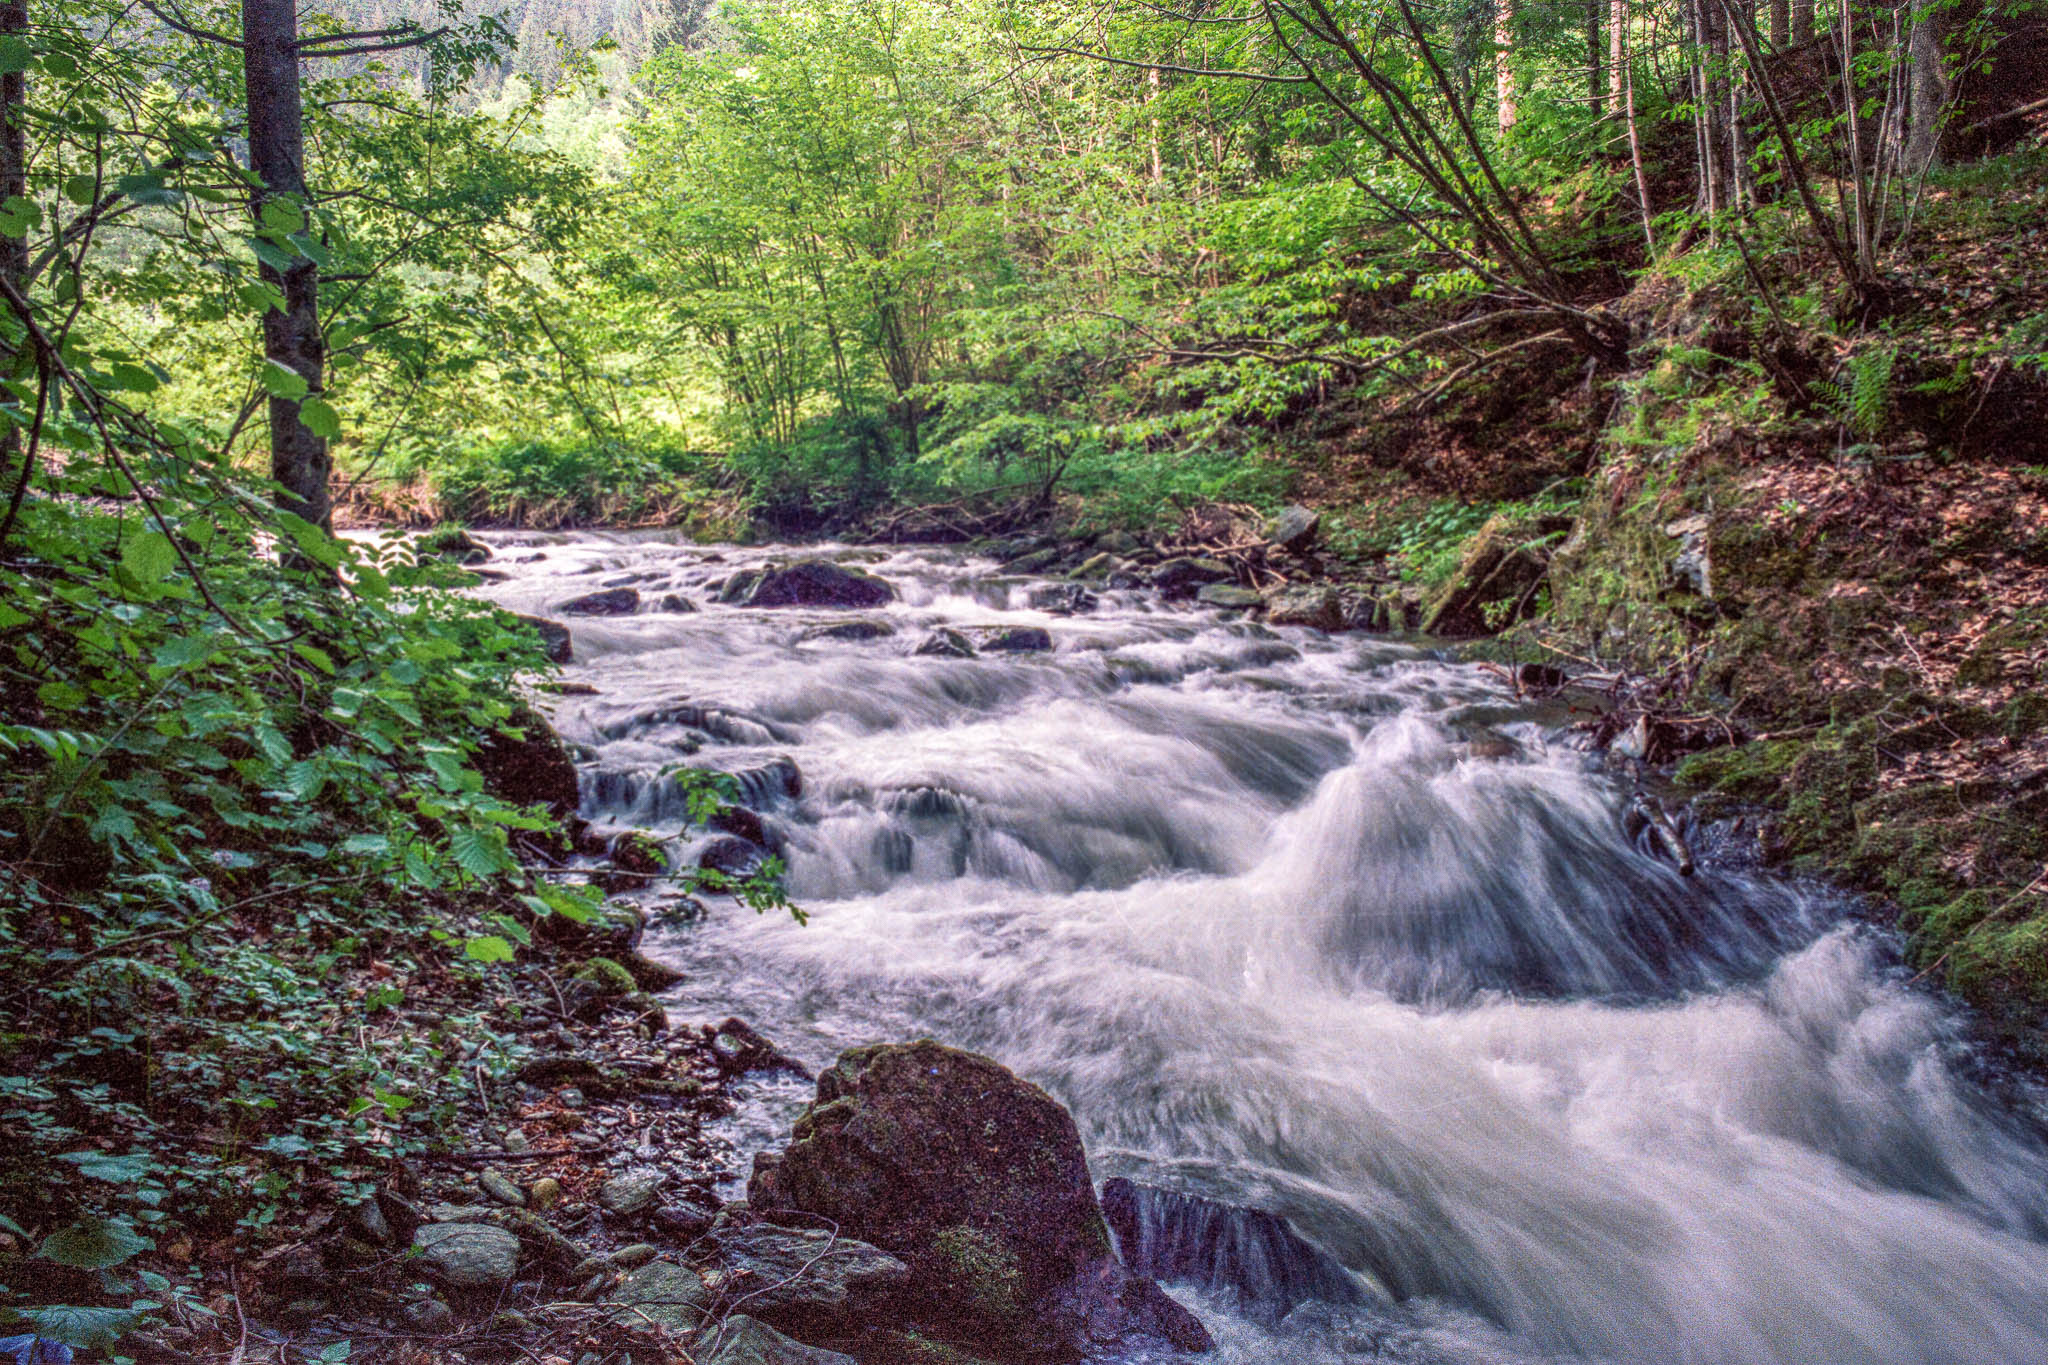 Eines meiner ersten Bildern der analogen Fotografie. Ein auf Farbfilm fotografierter, von Bäumen eingerahmter Bachlauf. Durch die leichte Langzeitbelichtung schmiegt sich das Wasser sanft über die vielen Steine.